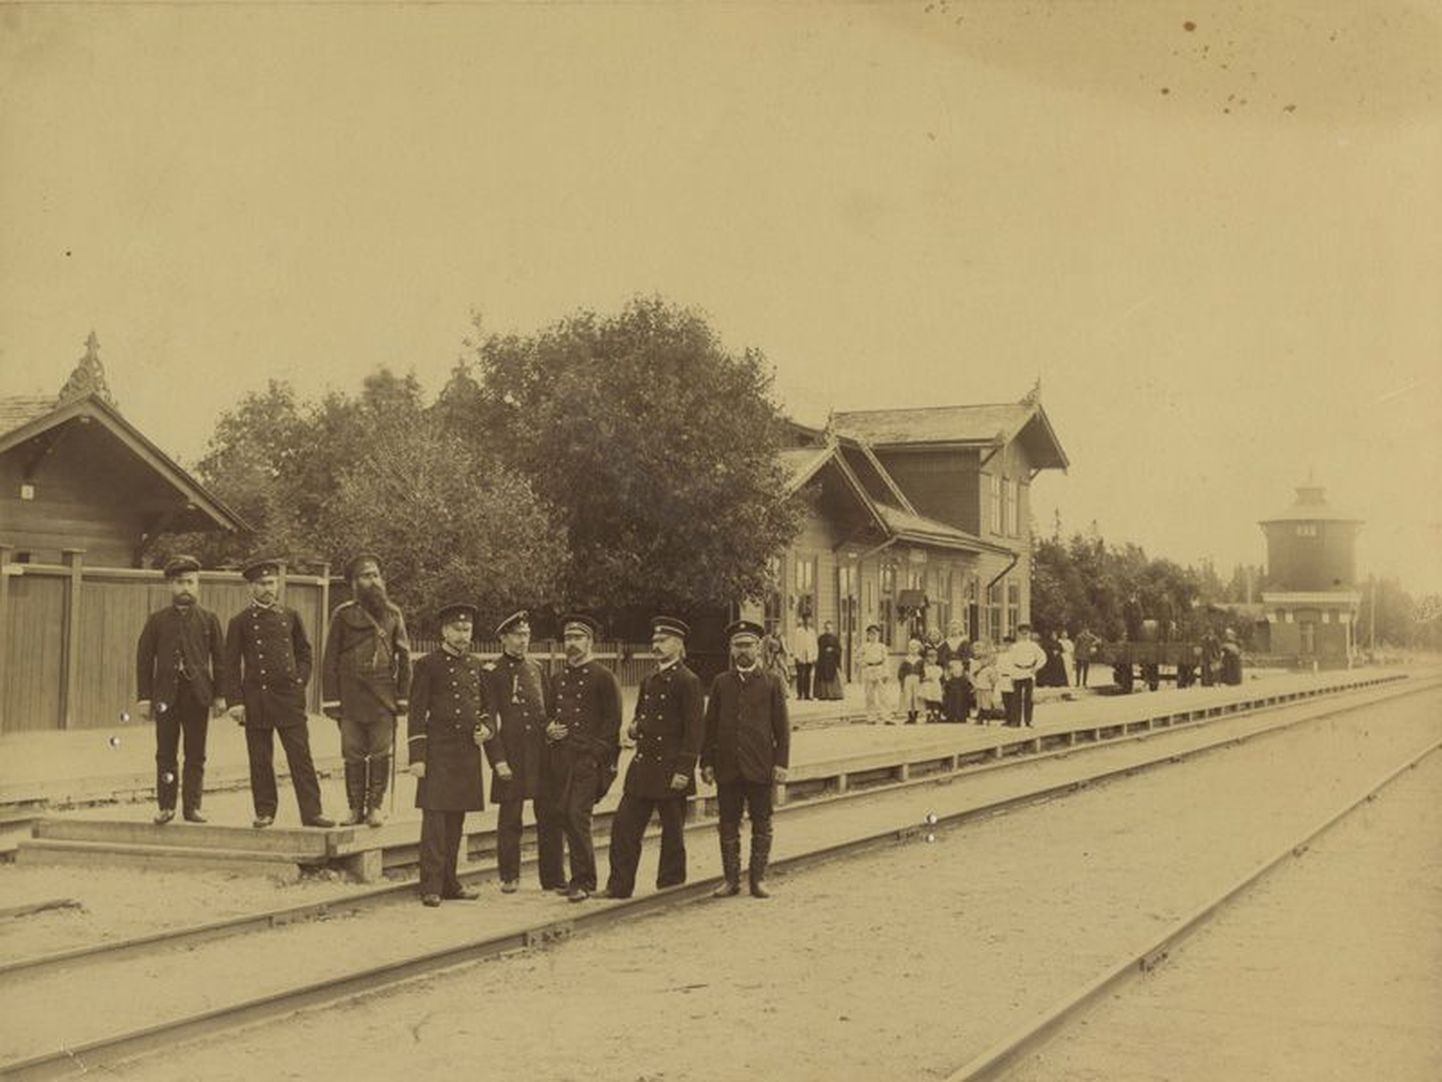 Kiltsi raudteejaam kujunes aastatega aleviku jaoks oluliseks tuiksooneks, samuti oli see jaam väga oluline Väike-Maarja rahva jaoks.